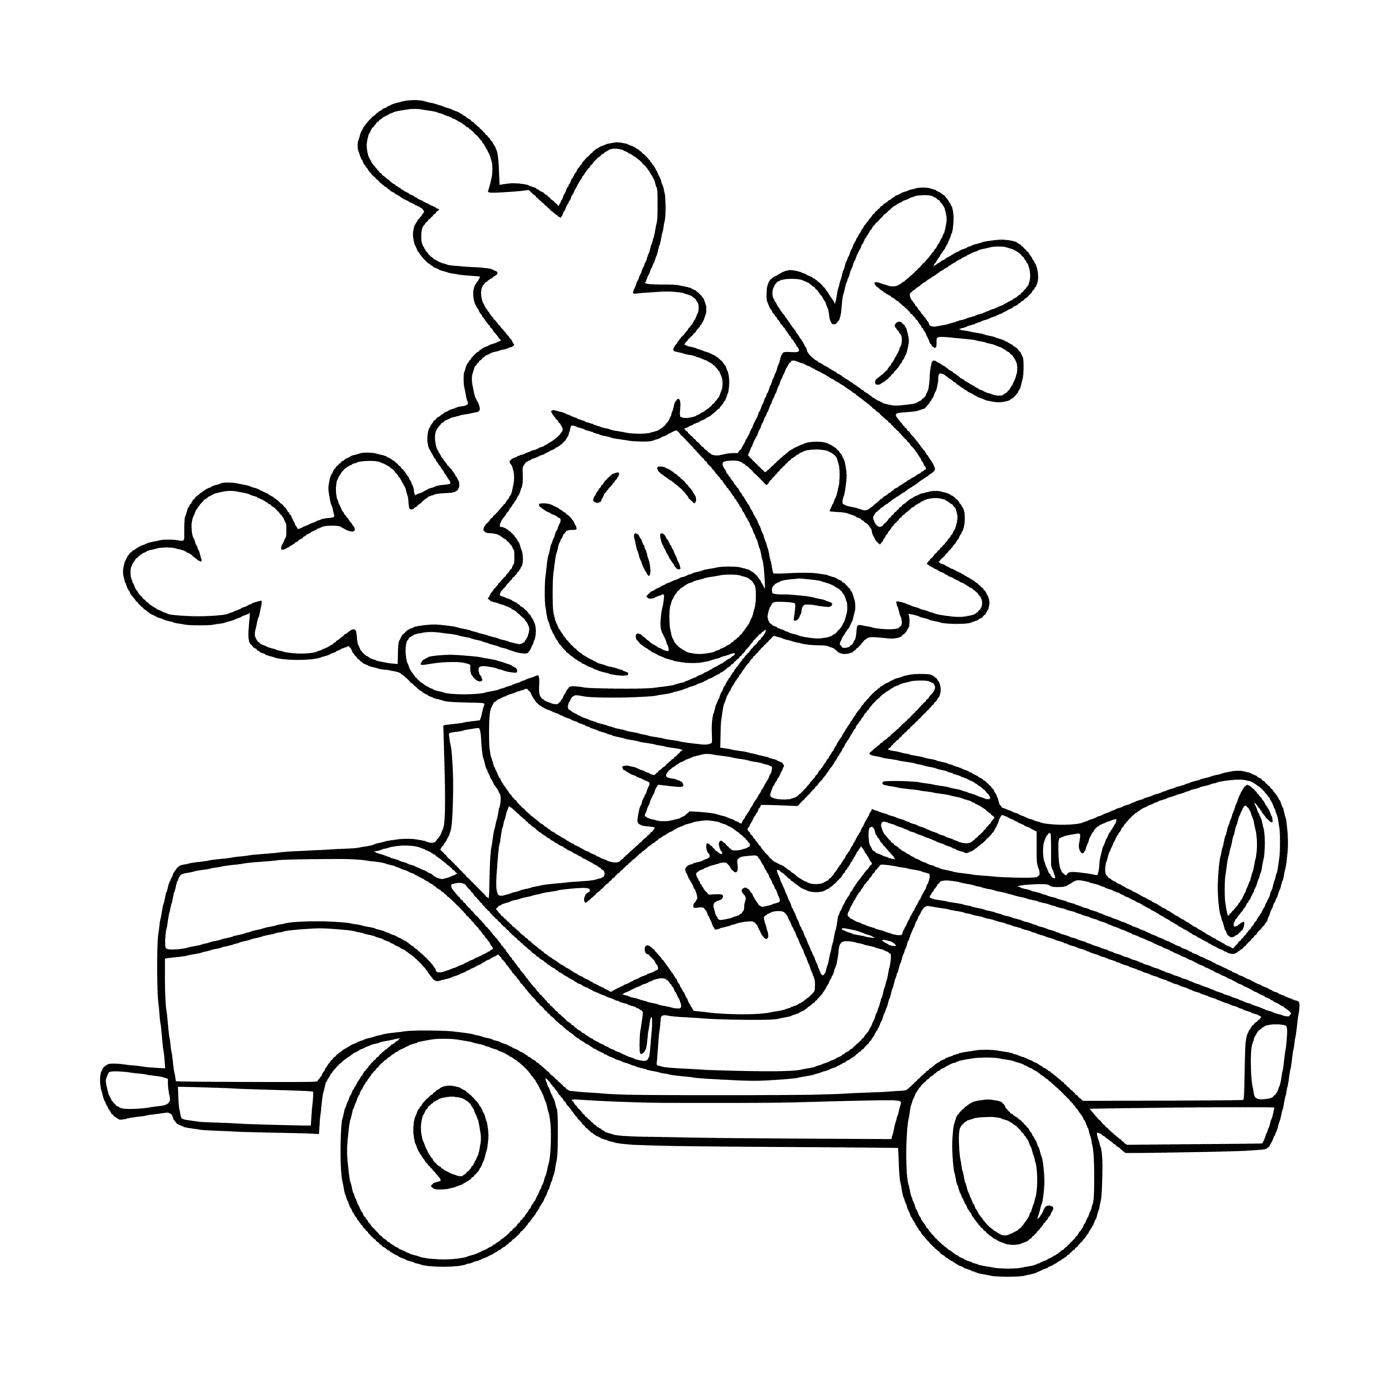  Bel clown alla guida di un'auto 